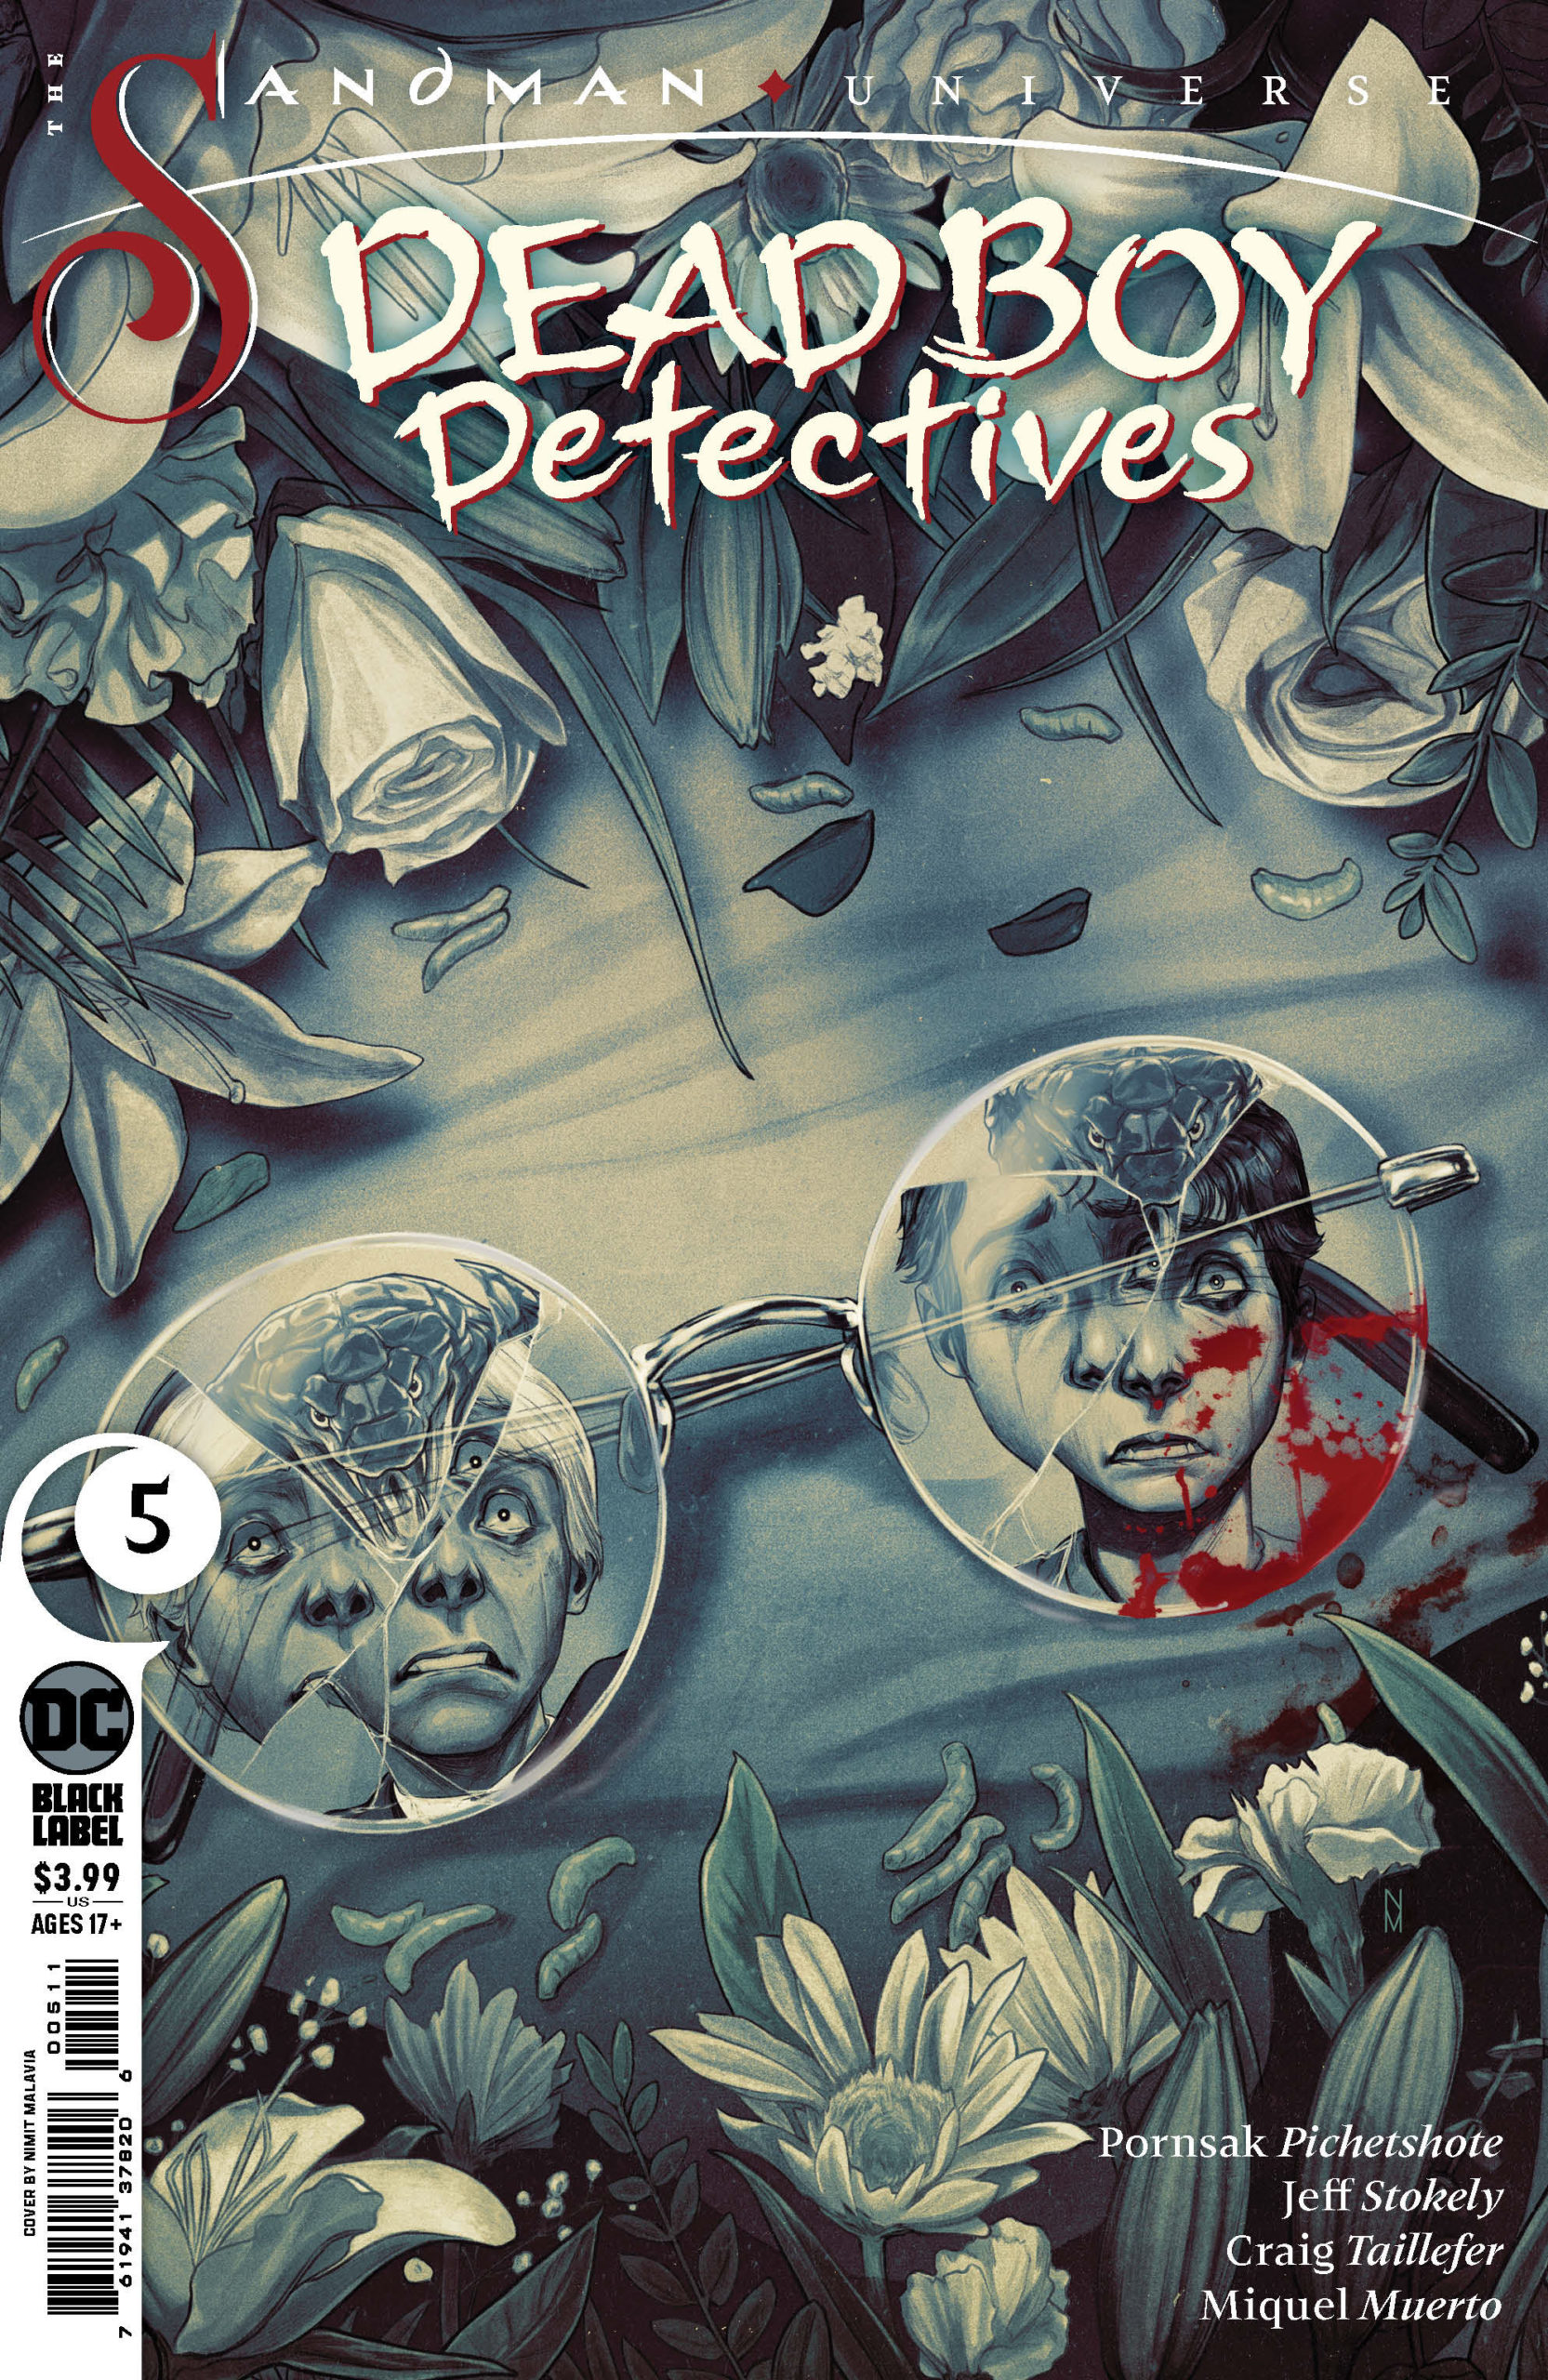 The Sandman Universe: Dead Boy Detectives #5